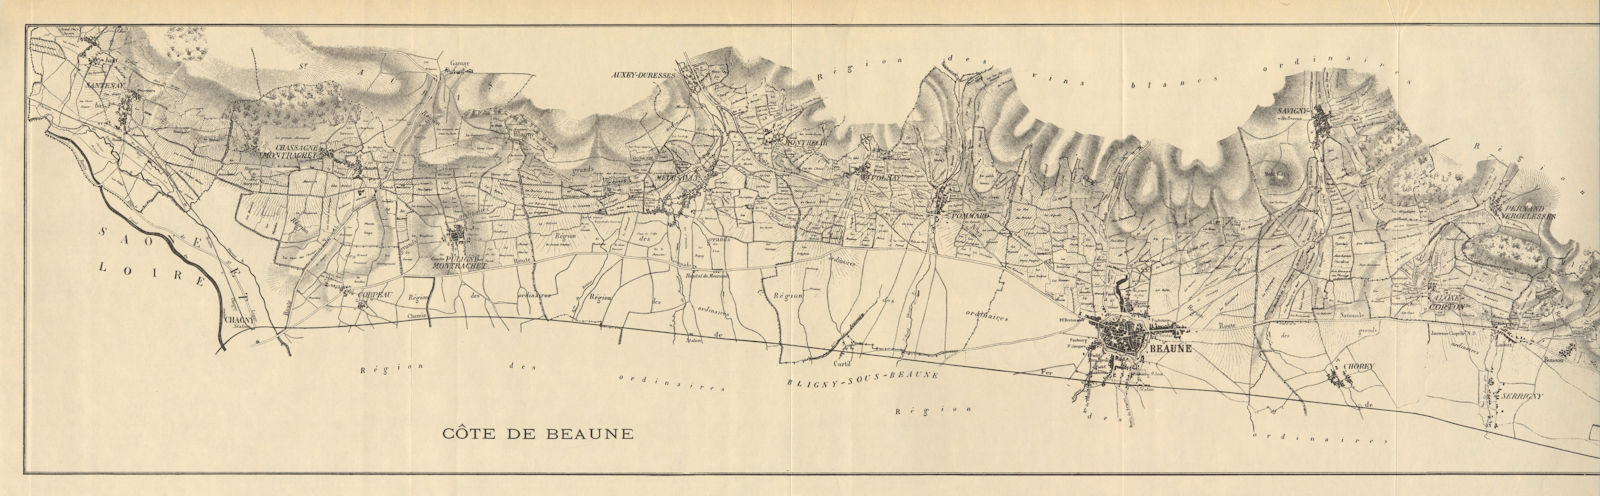 Vignobles Grands Vins de Bourgogne. Côte de Beaune Burgundy wine map RODIER 1935